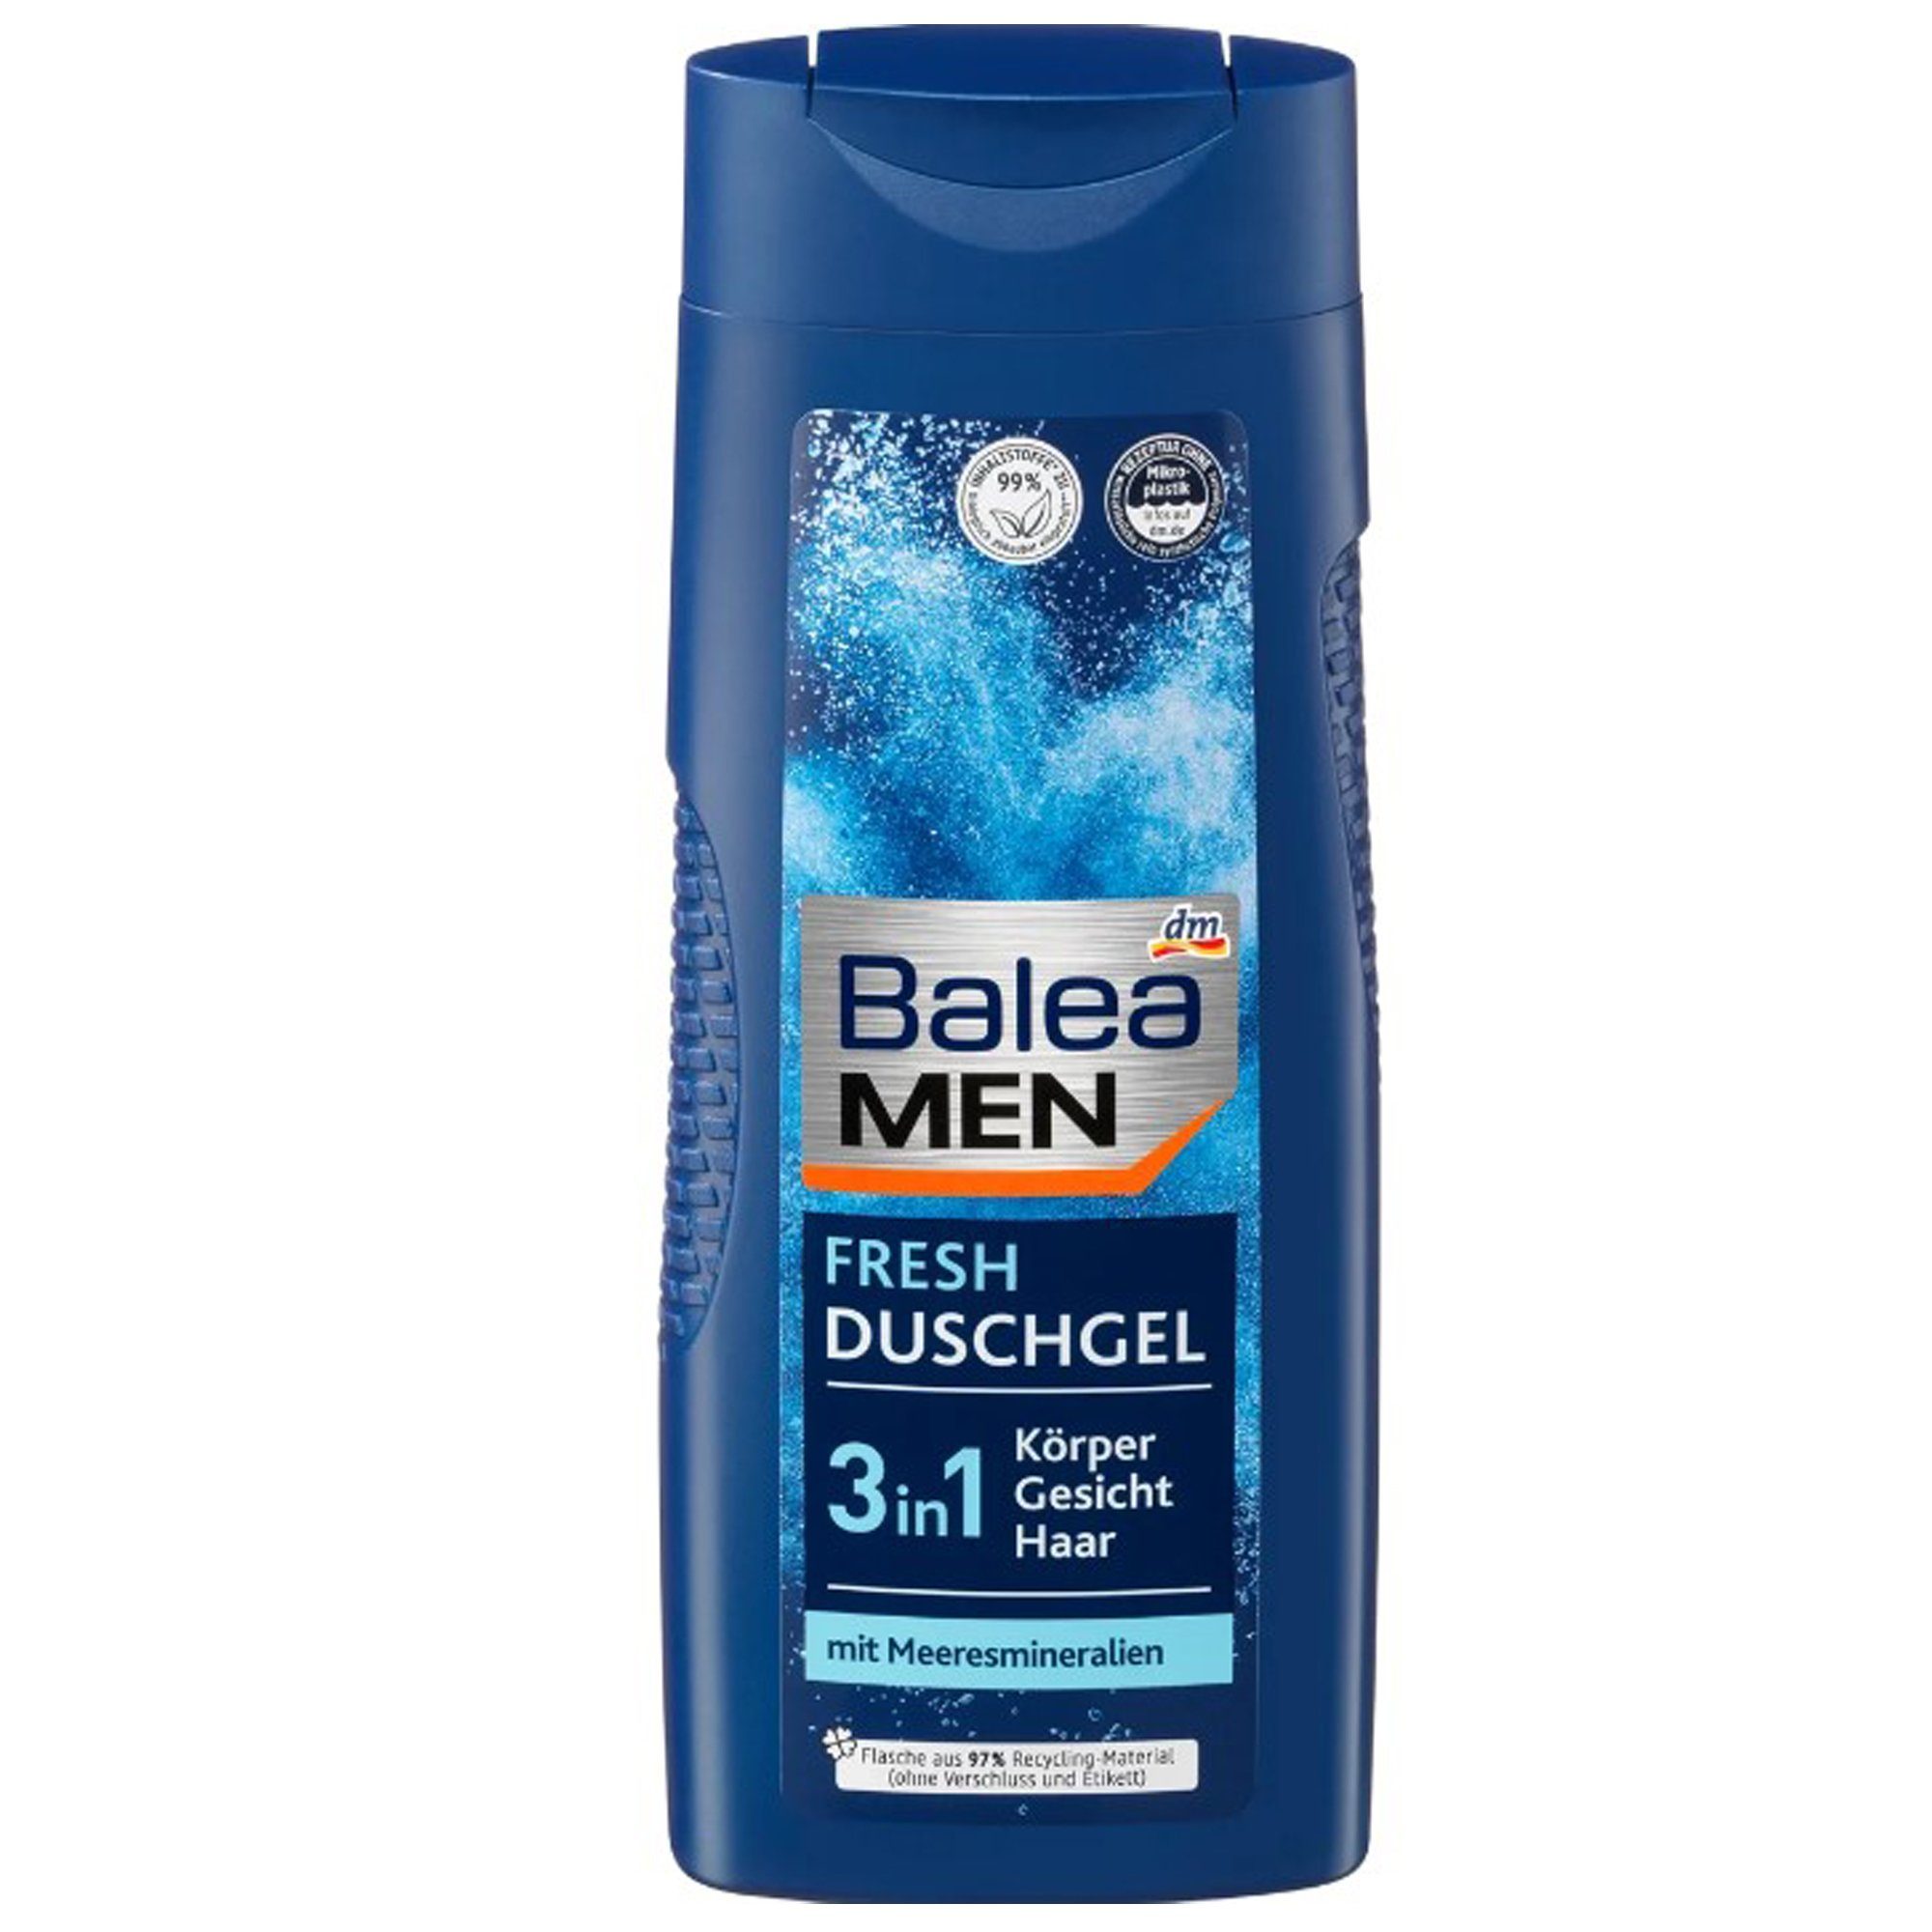 Balea Duschgel Männerduschgel Duschgel für Men Shampoo, 3in1 Männer VEGAN